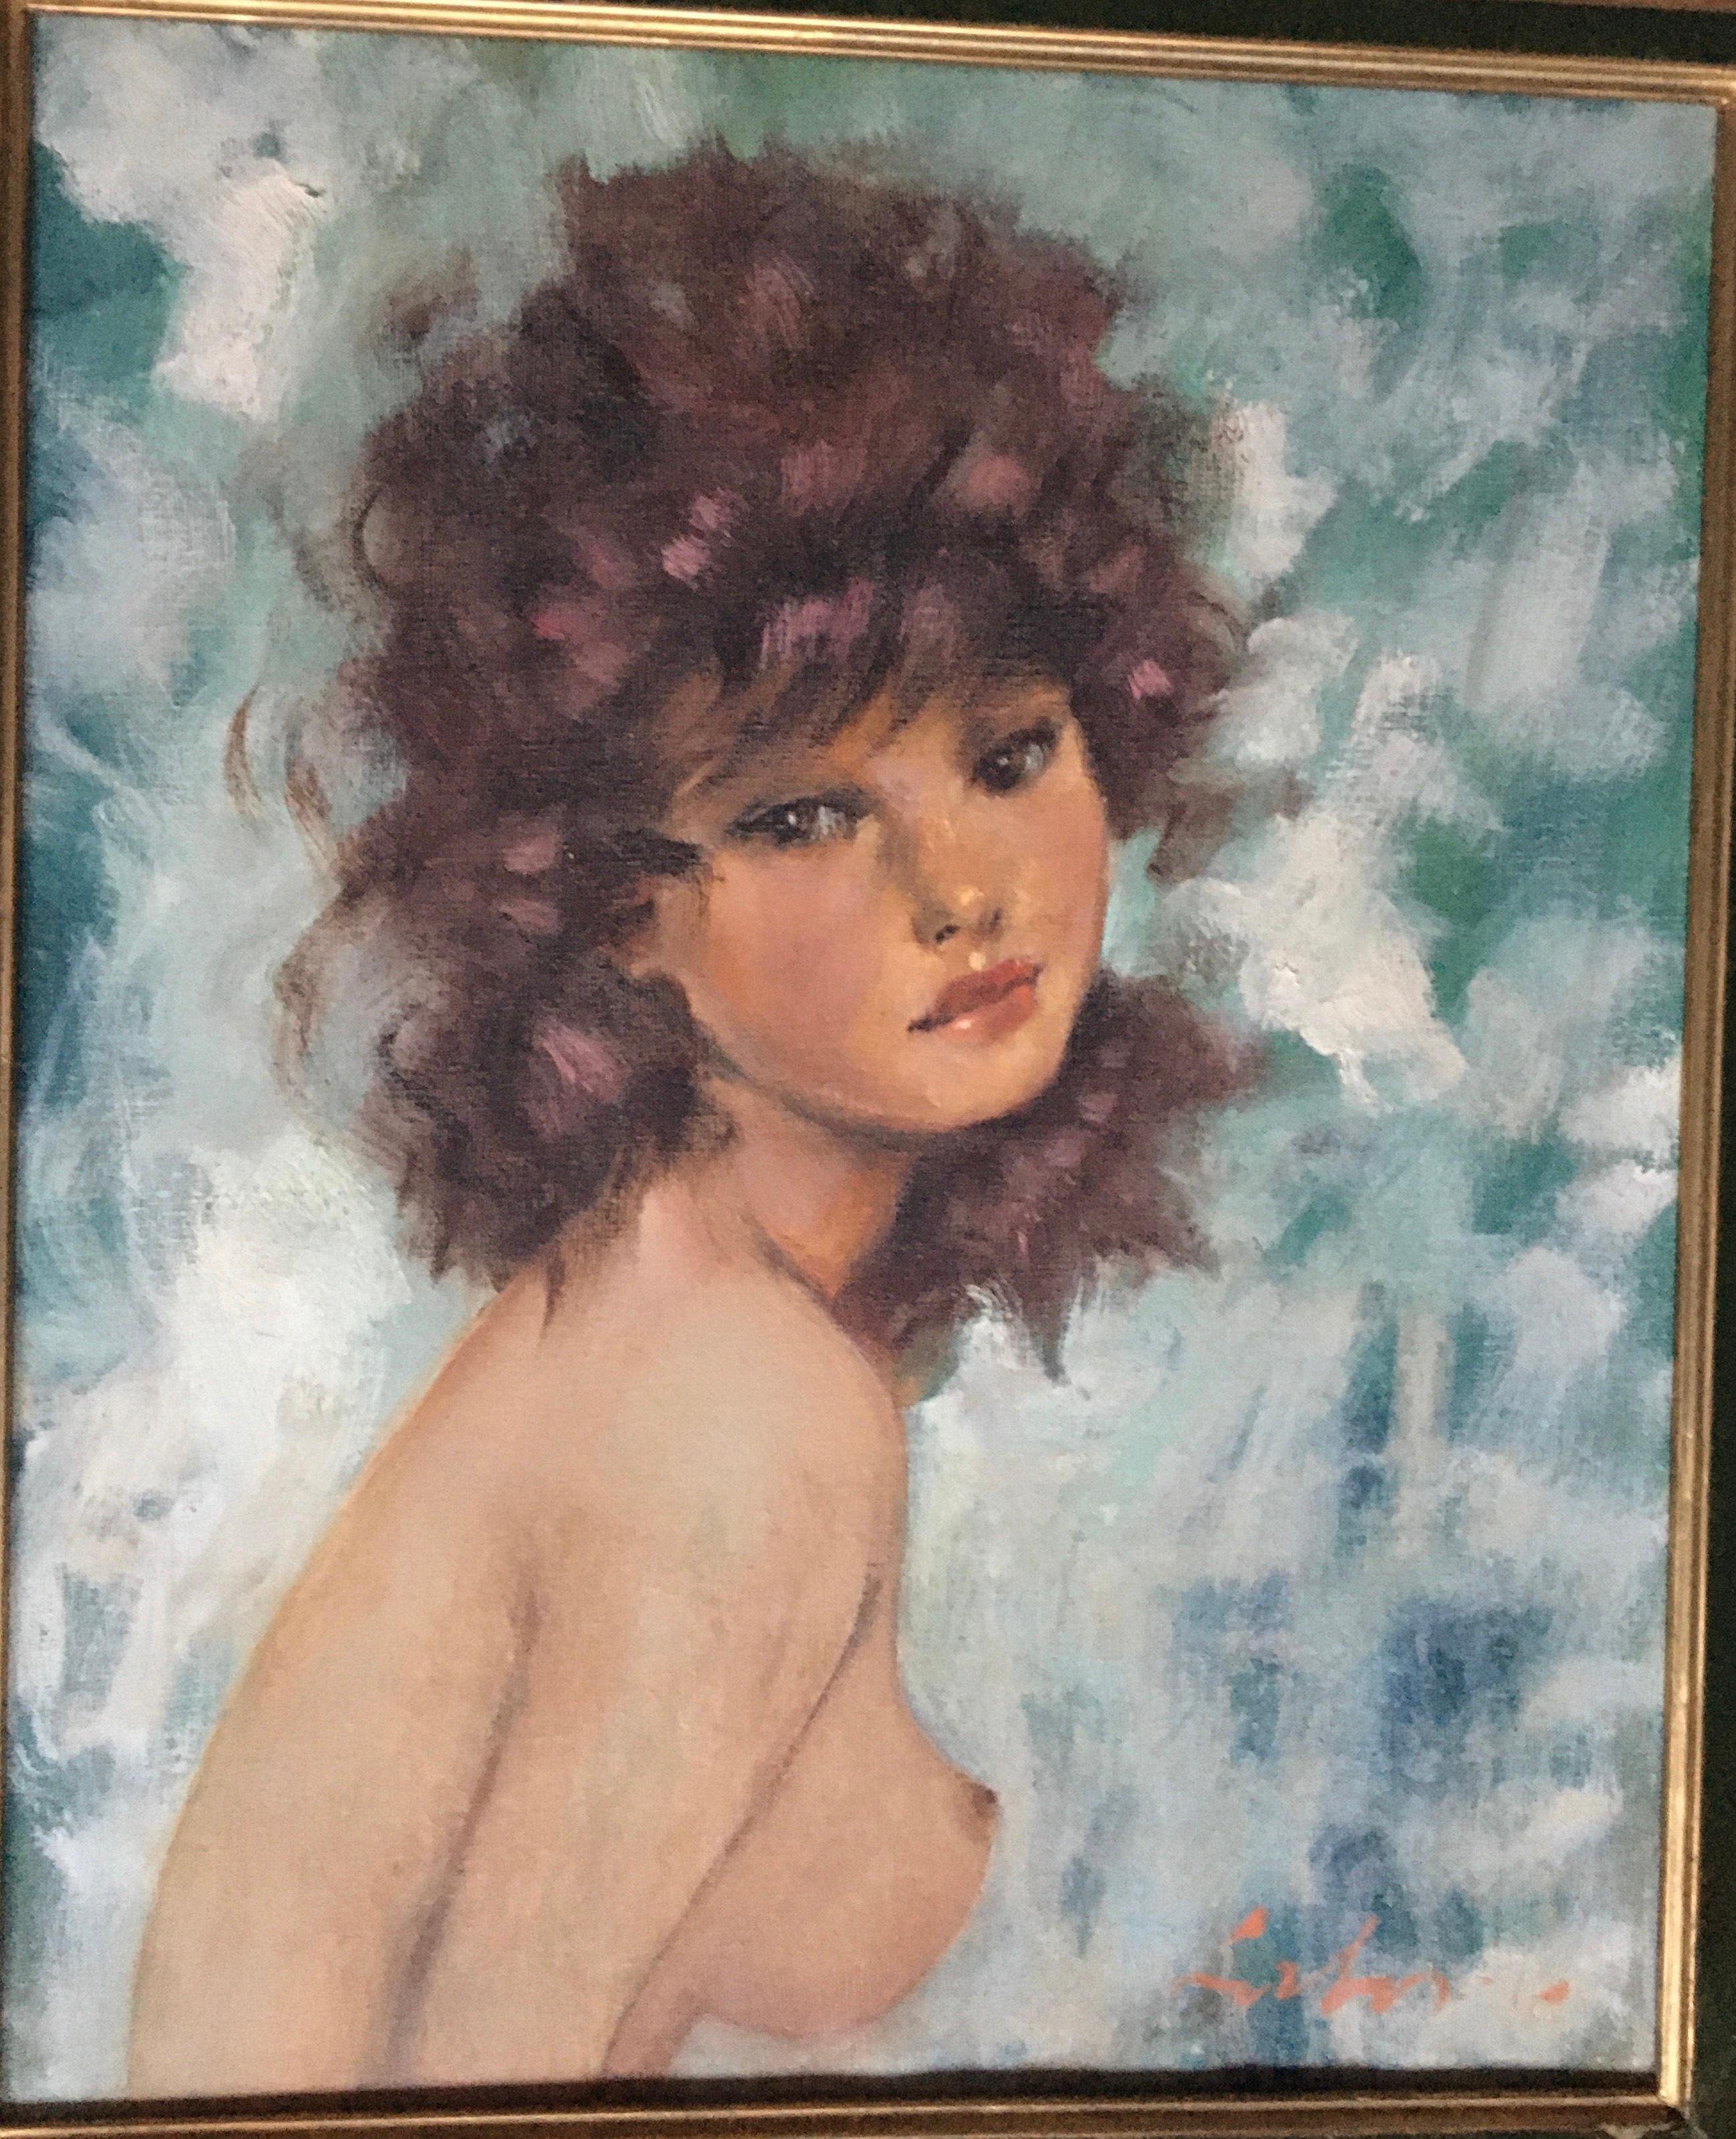 Belle huile sur toile de l'école française des années 60 représentant de manière très sensuelle une jeune fille en buste nu.
La composition rappelle les œuvres du célèbre Jean Gabriel Domergue, qui était le peintre 